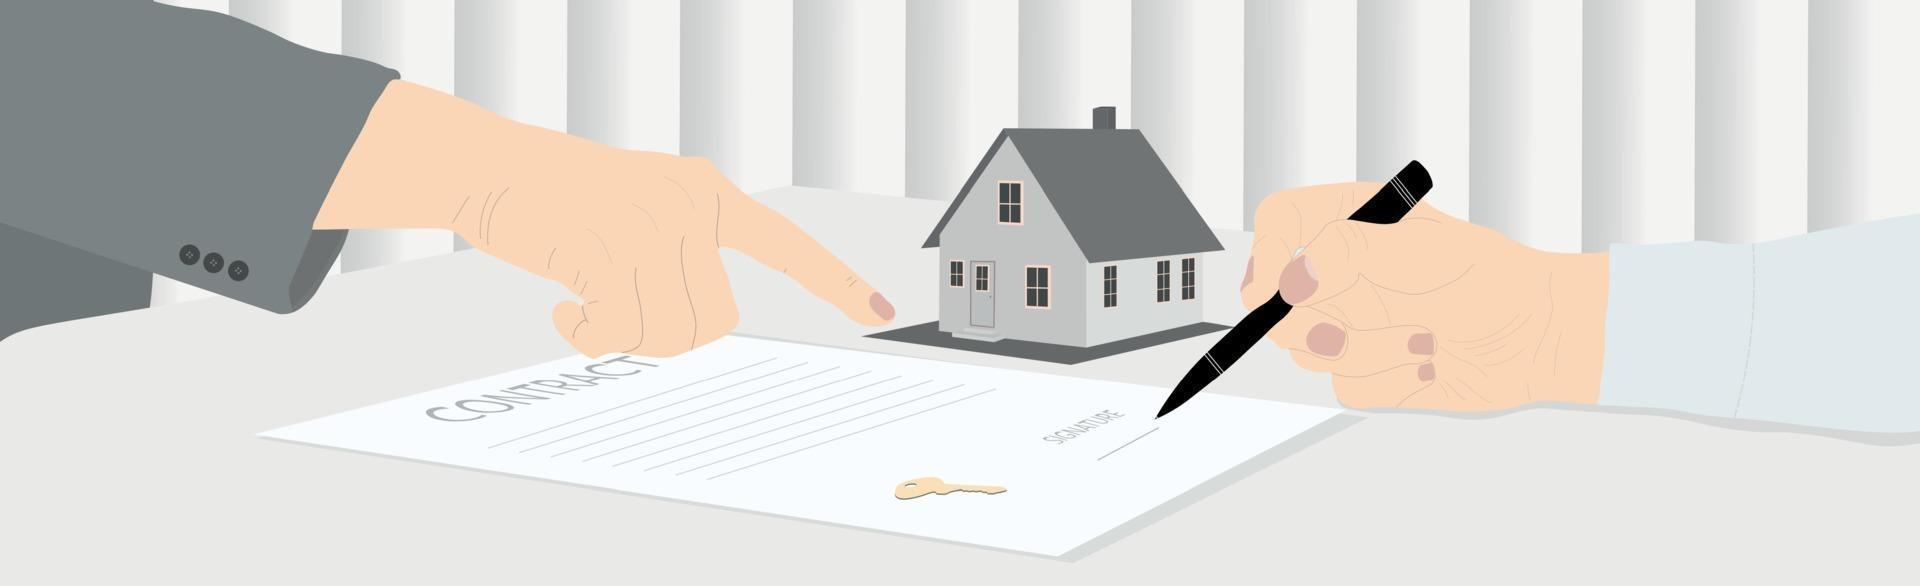 firmare un contratto di acquisto di una casa, ricevere le chiavi - vettore